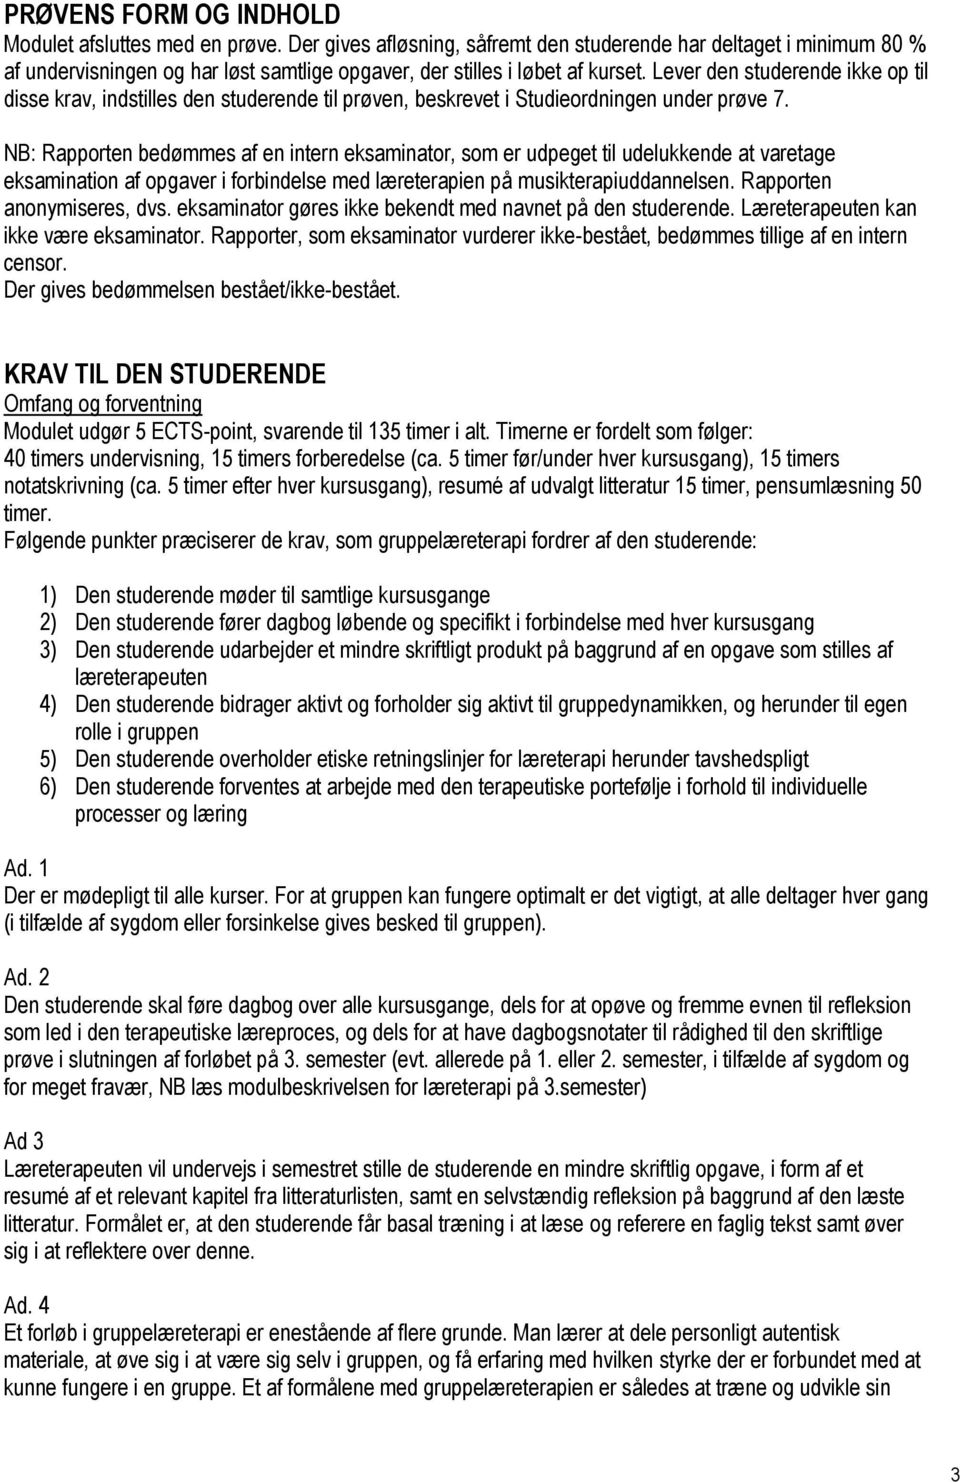 Lever den studerende ikke op til disse krav, indstilles den studerende til prøven, beskrevet i Studieordningen under prøve 7.